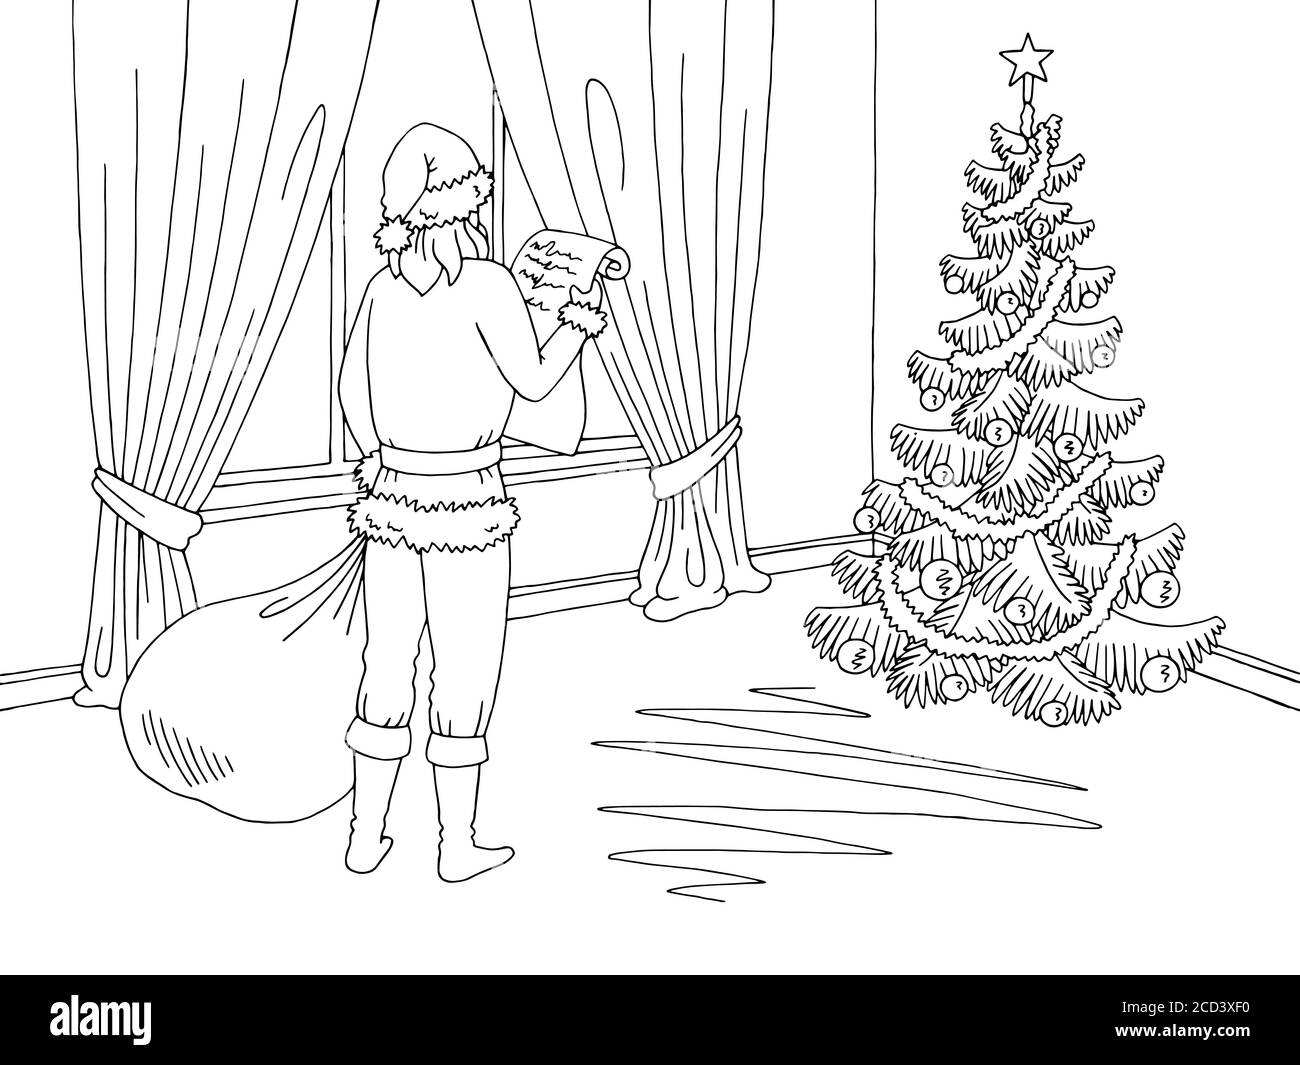 Weihnachtsmann liest eine Liste von Geschenken. Wohnzimmer Grafik schwarz weiß Interieur Skizze Illustration Vektor Stock Vektor